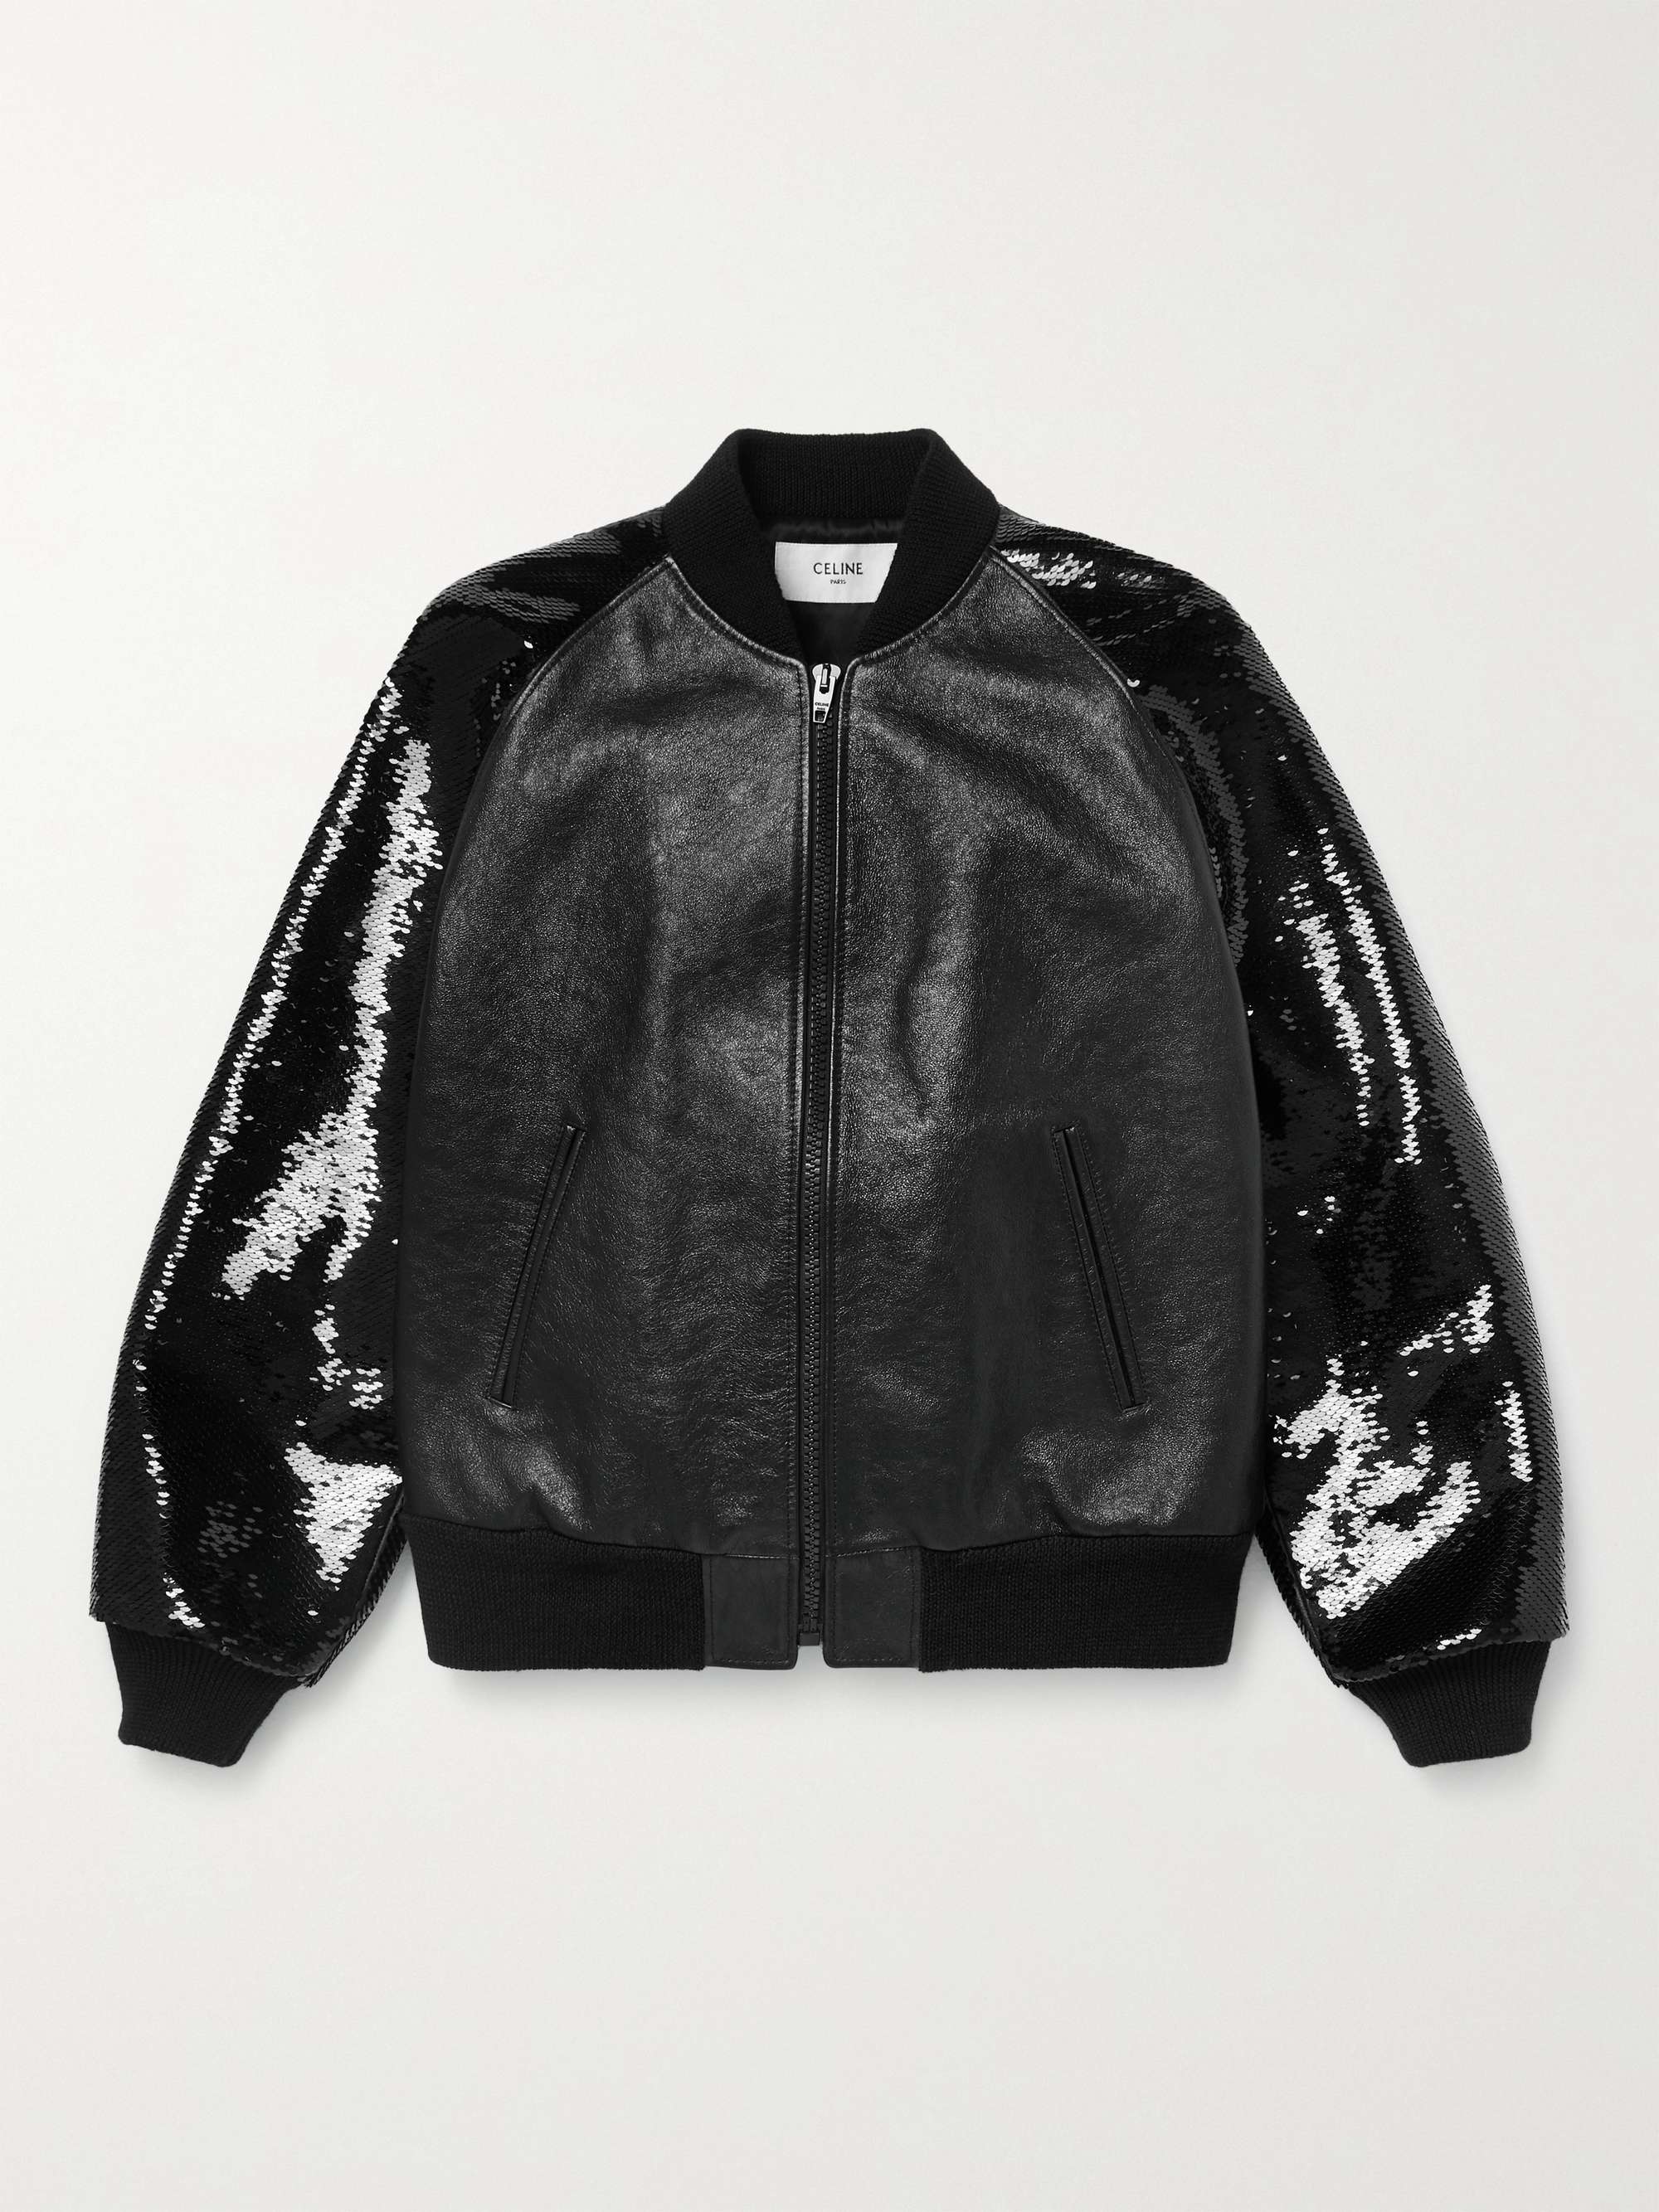 CELINE HOMME Sequin-Embellished Leather Blouson Jacket for Men | MR PORTER